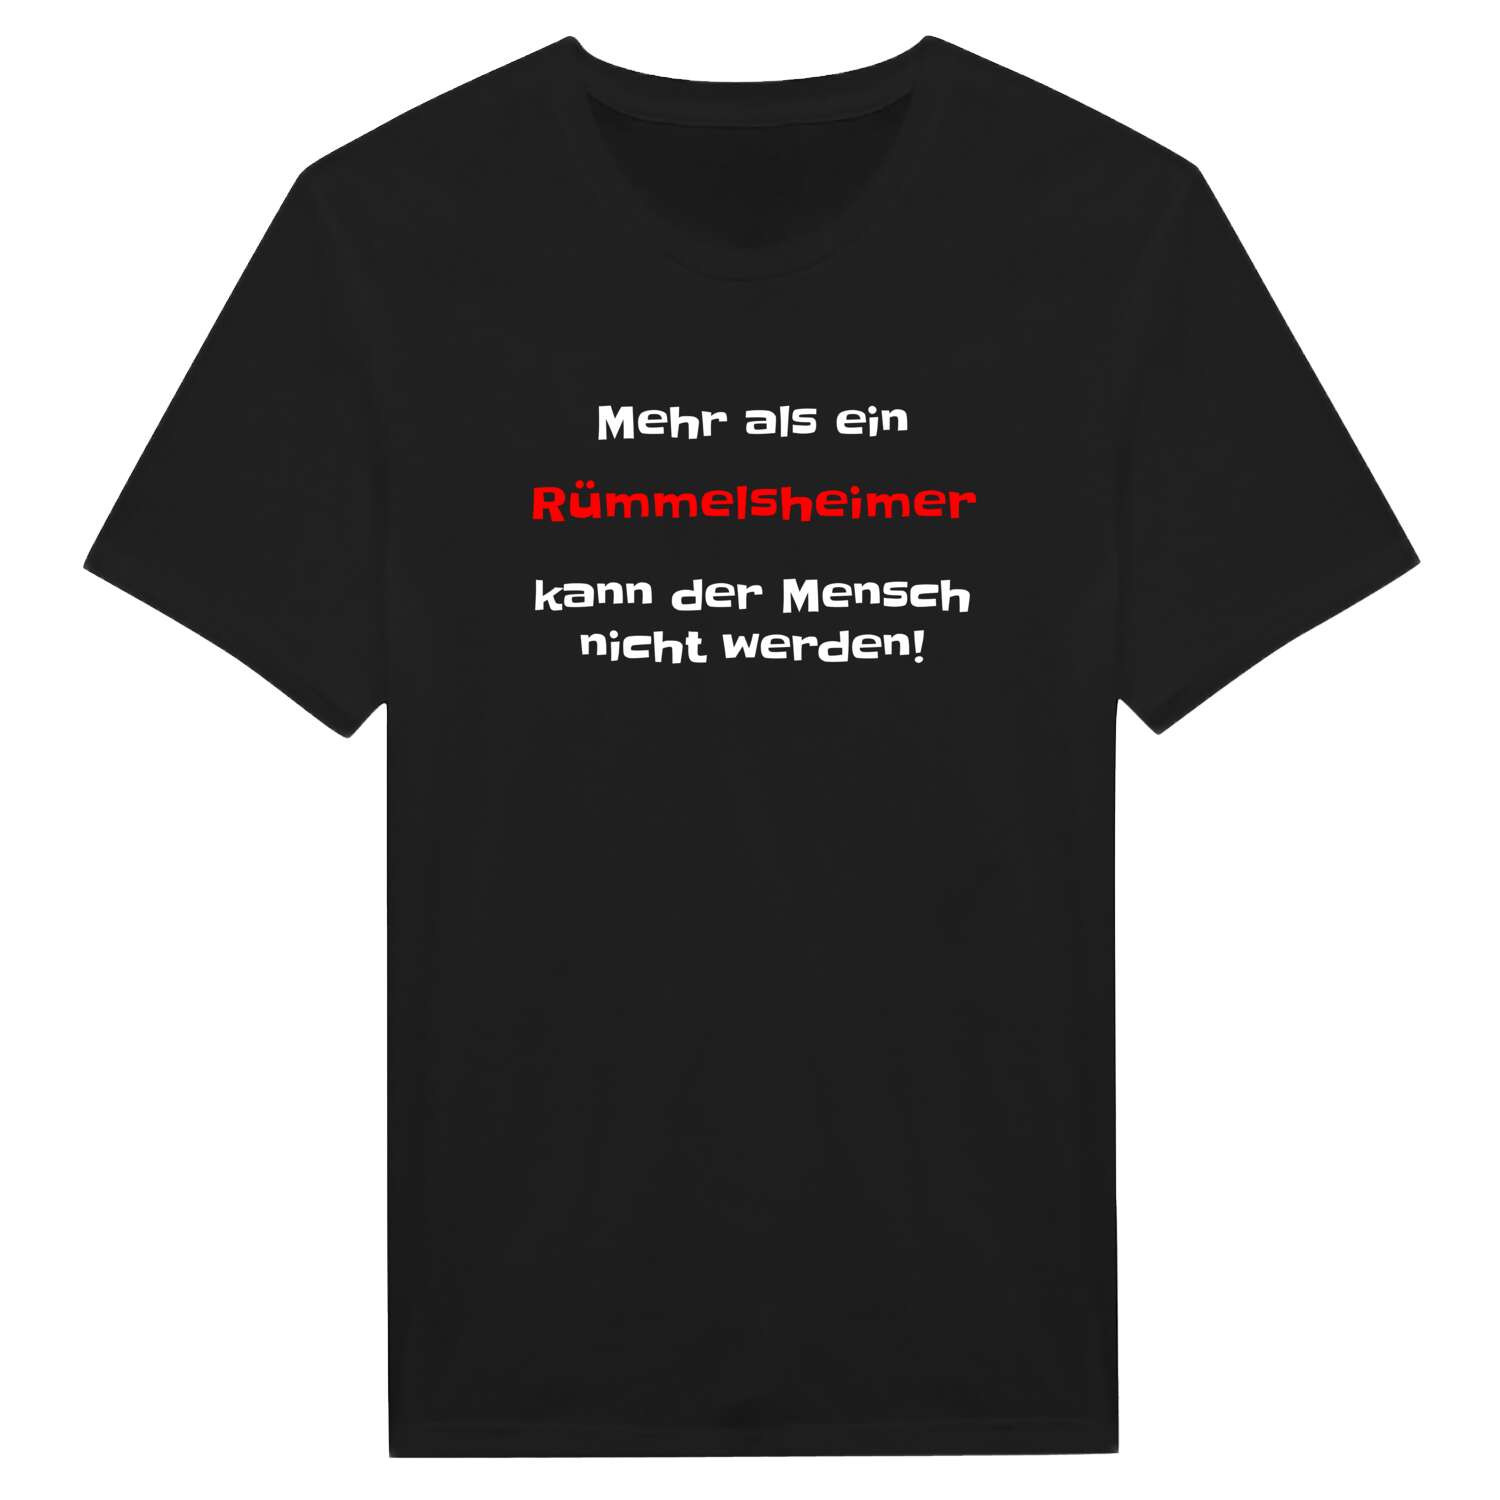 Rümmelsheim T-Shirt »Mehr als ein«